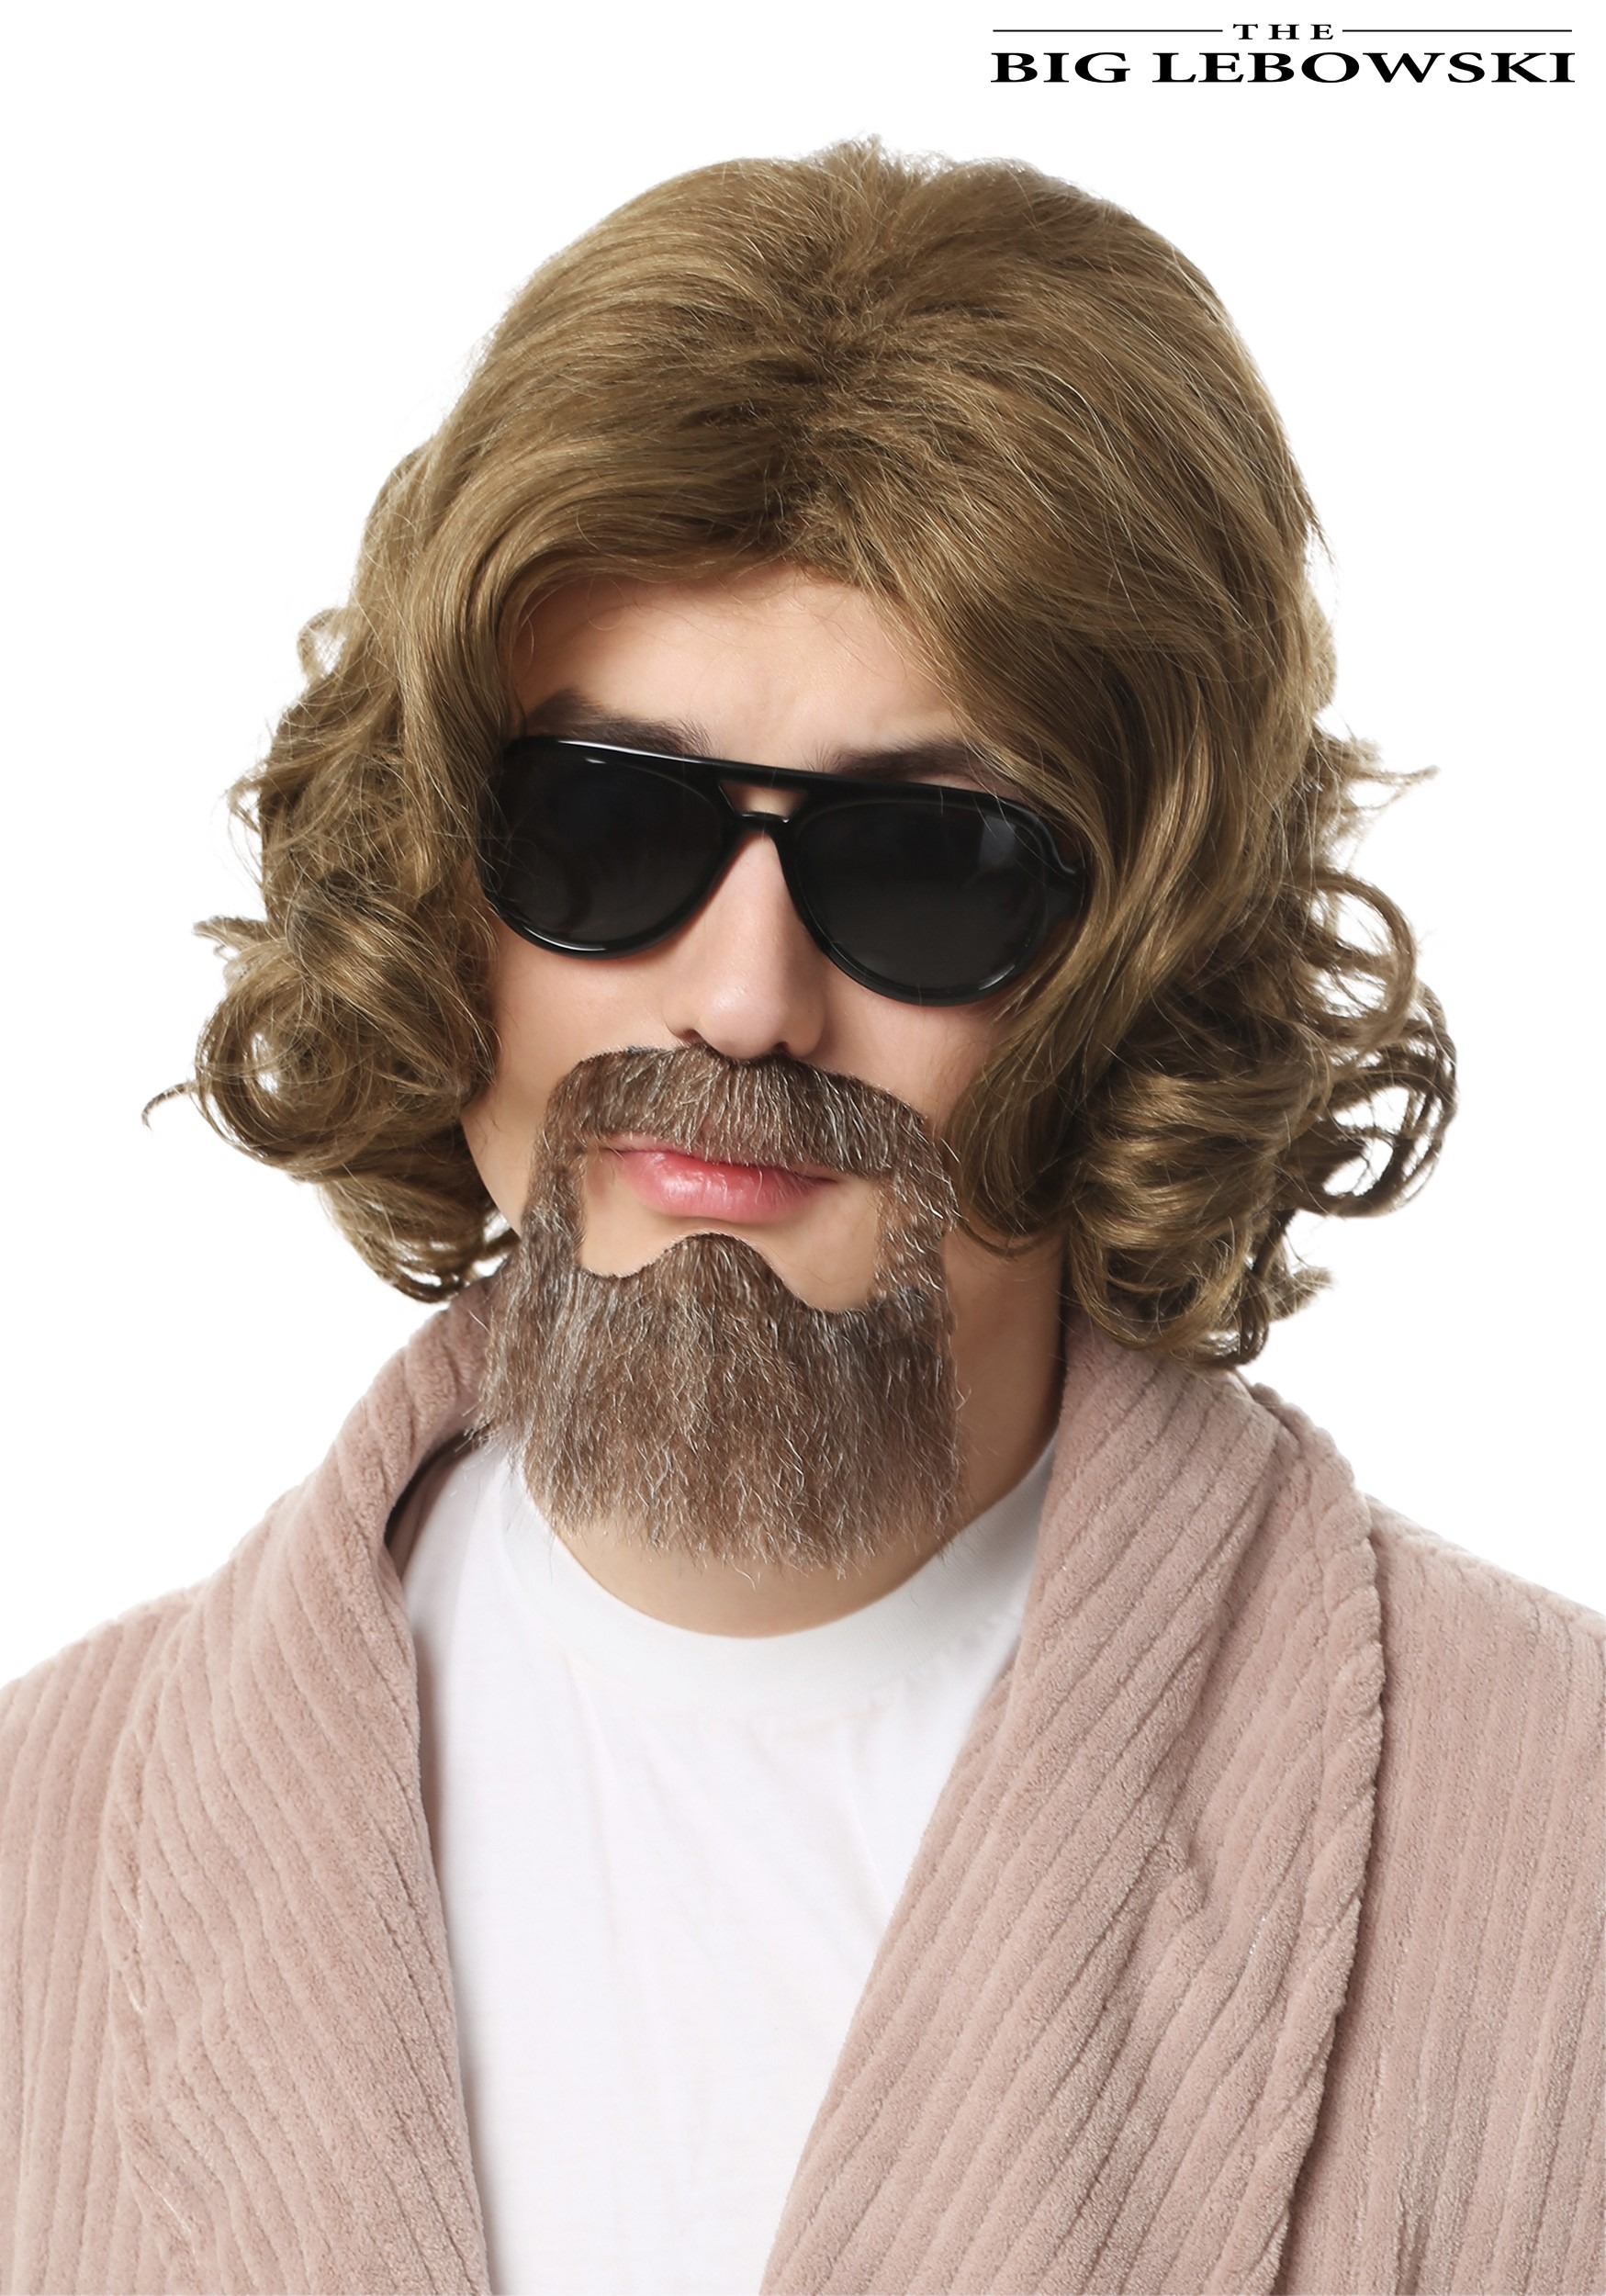 Men's Wigs - Halloween Costume Wigs for Men